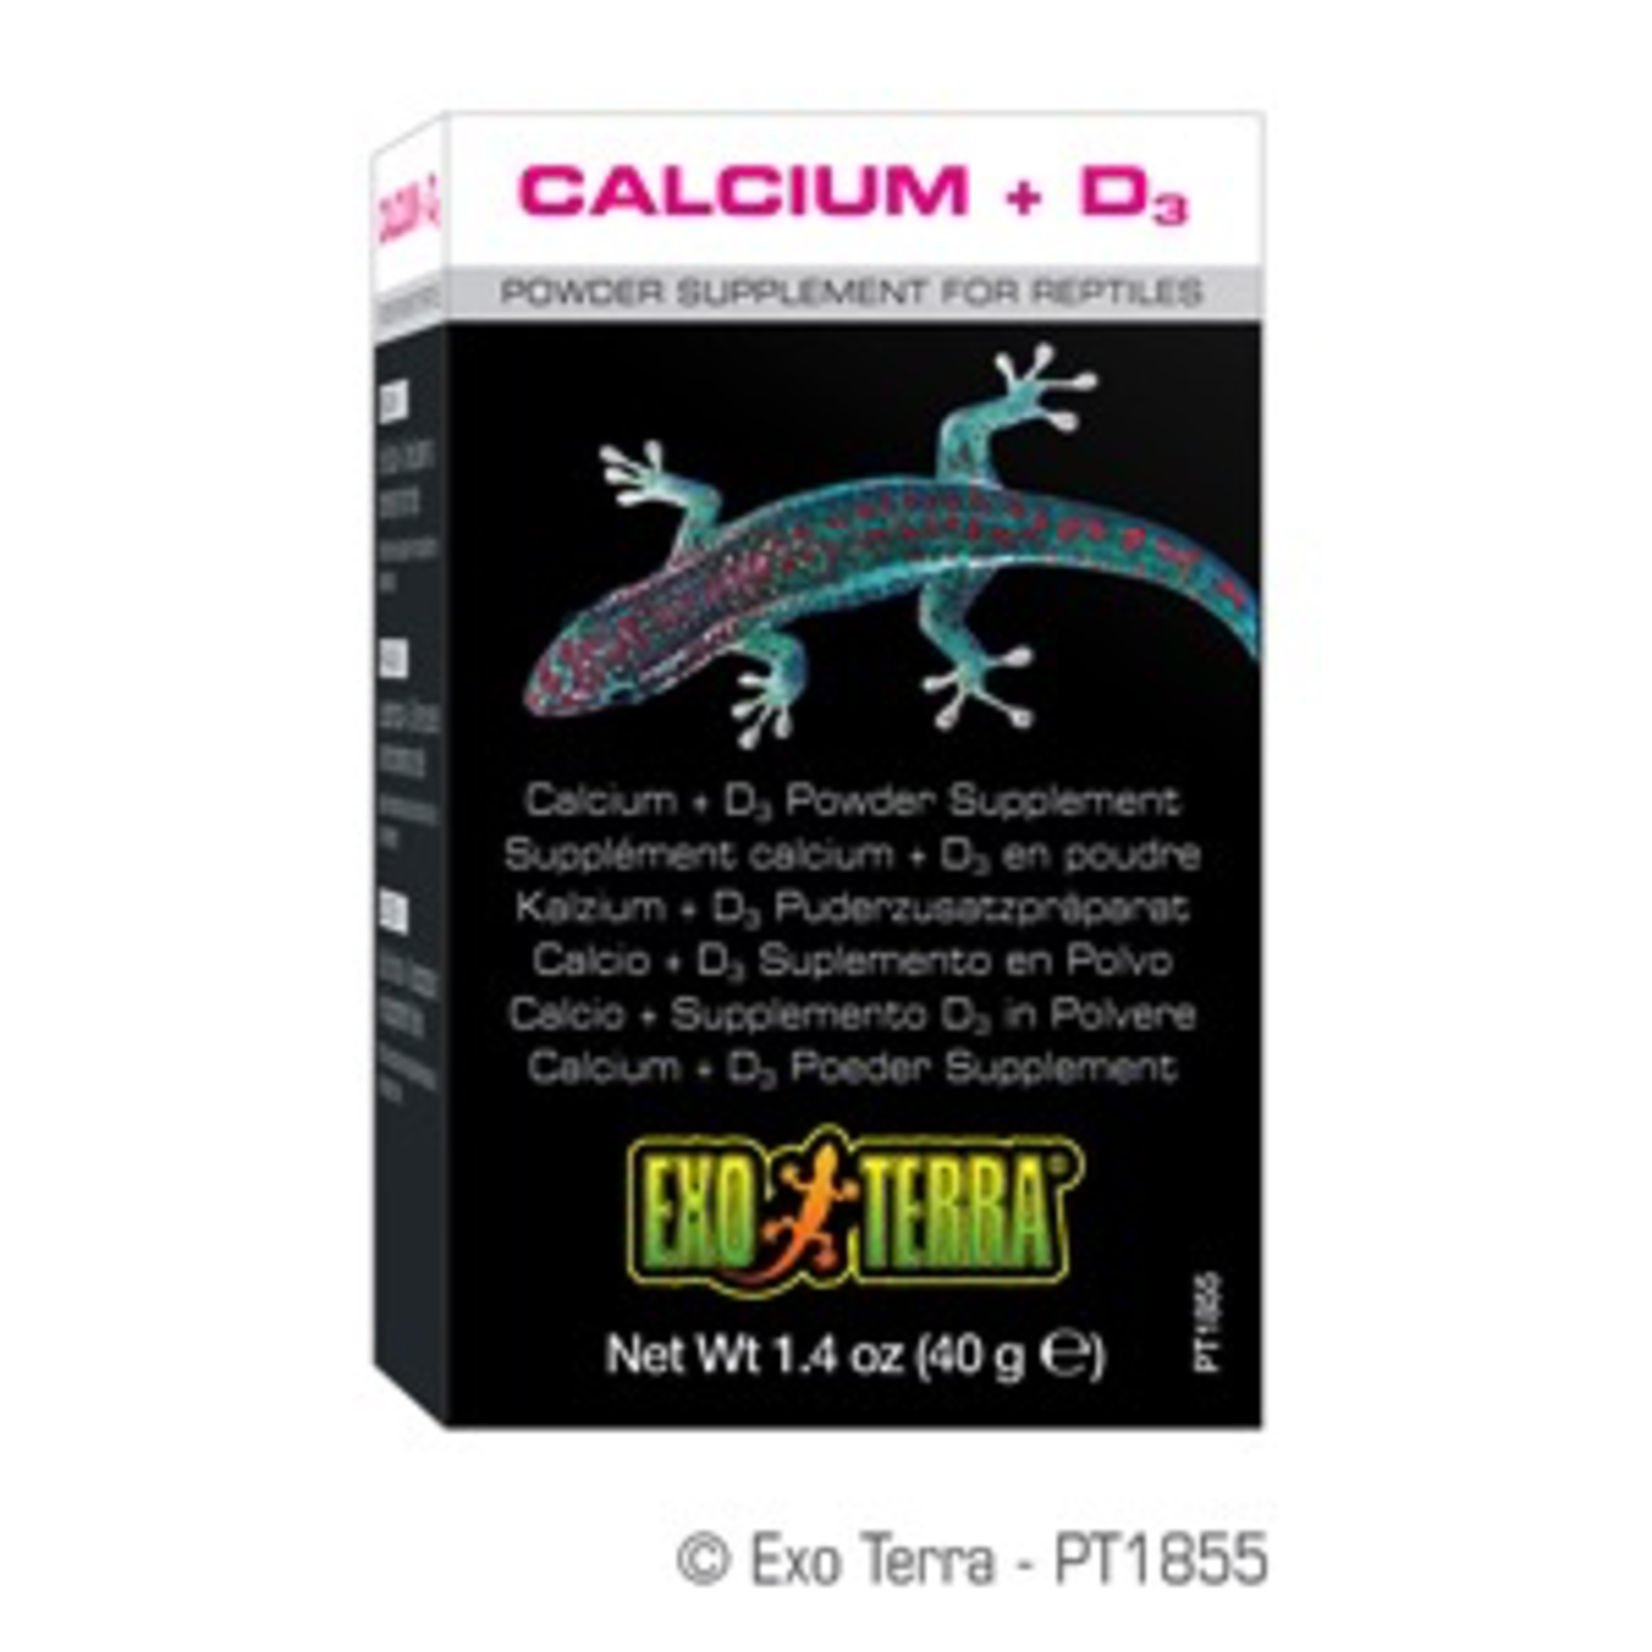 EXO TERRA (W) Exo Terra Calcium + D3 Powder Supplement - 1.4 oz / 40 g